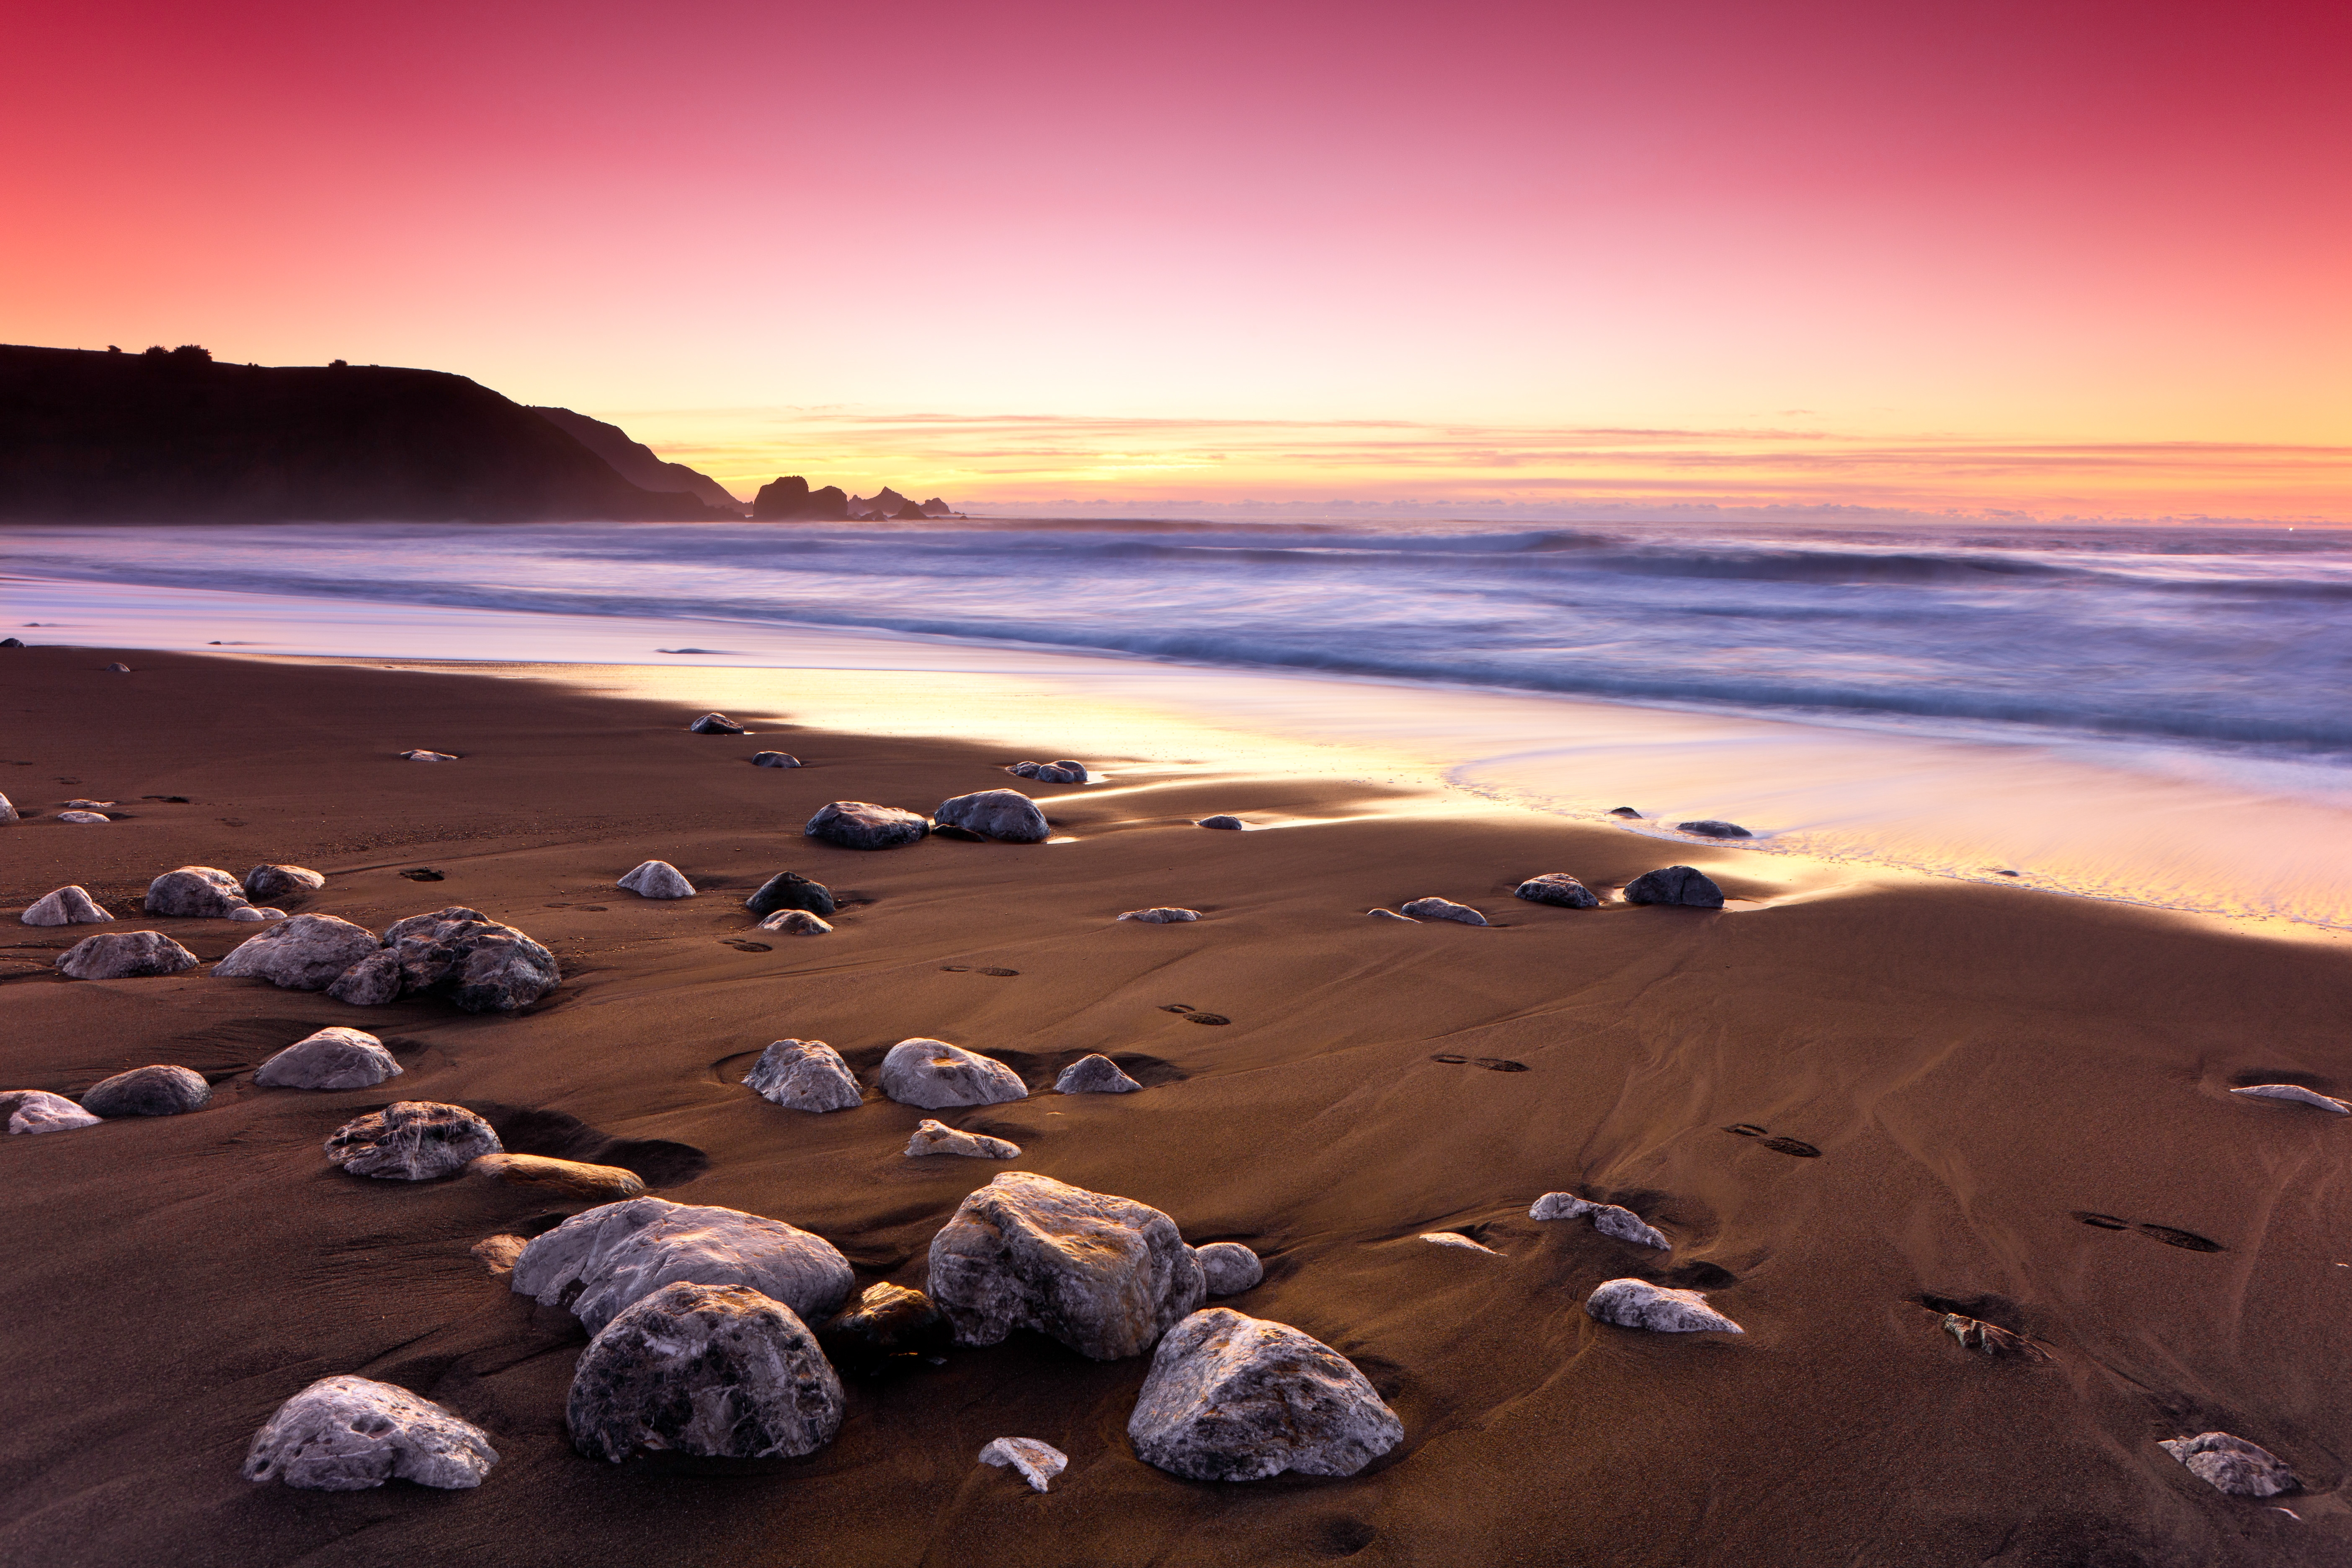 HD wallpaper, Rockaway Beach, Sunset, Ocean, Waves, Pink Sky, Beautiful, 5K, Landscape, Scenery, Seascape